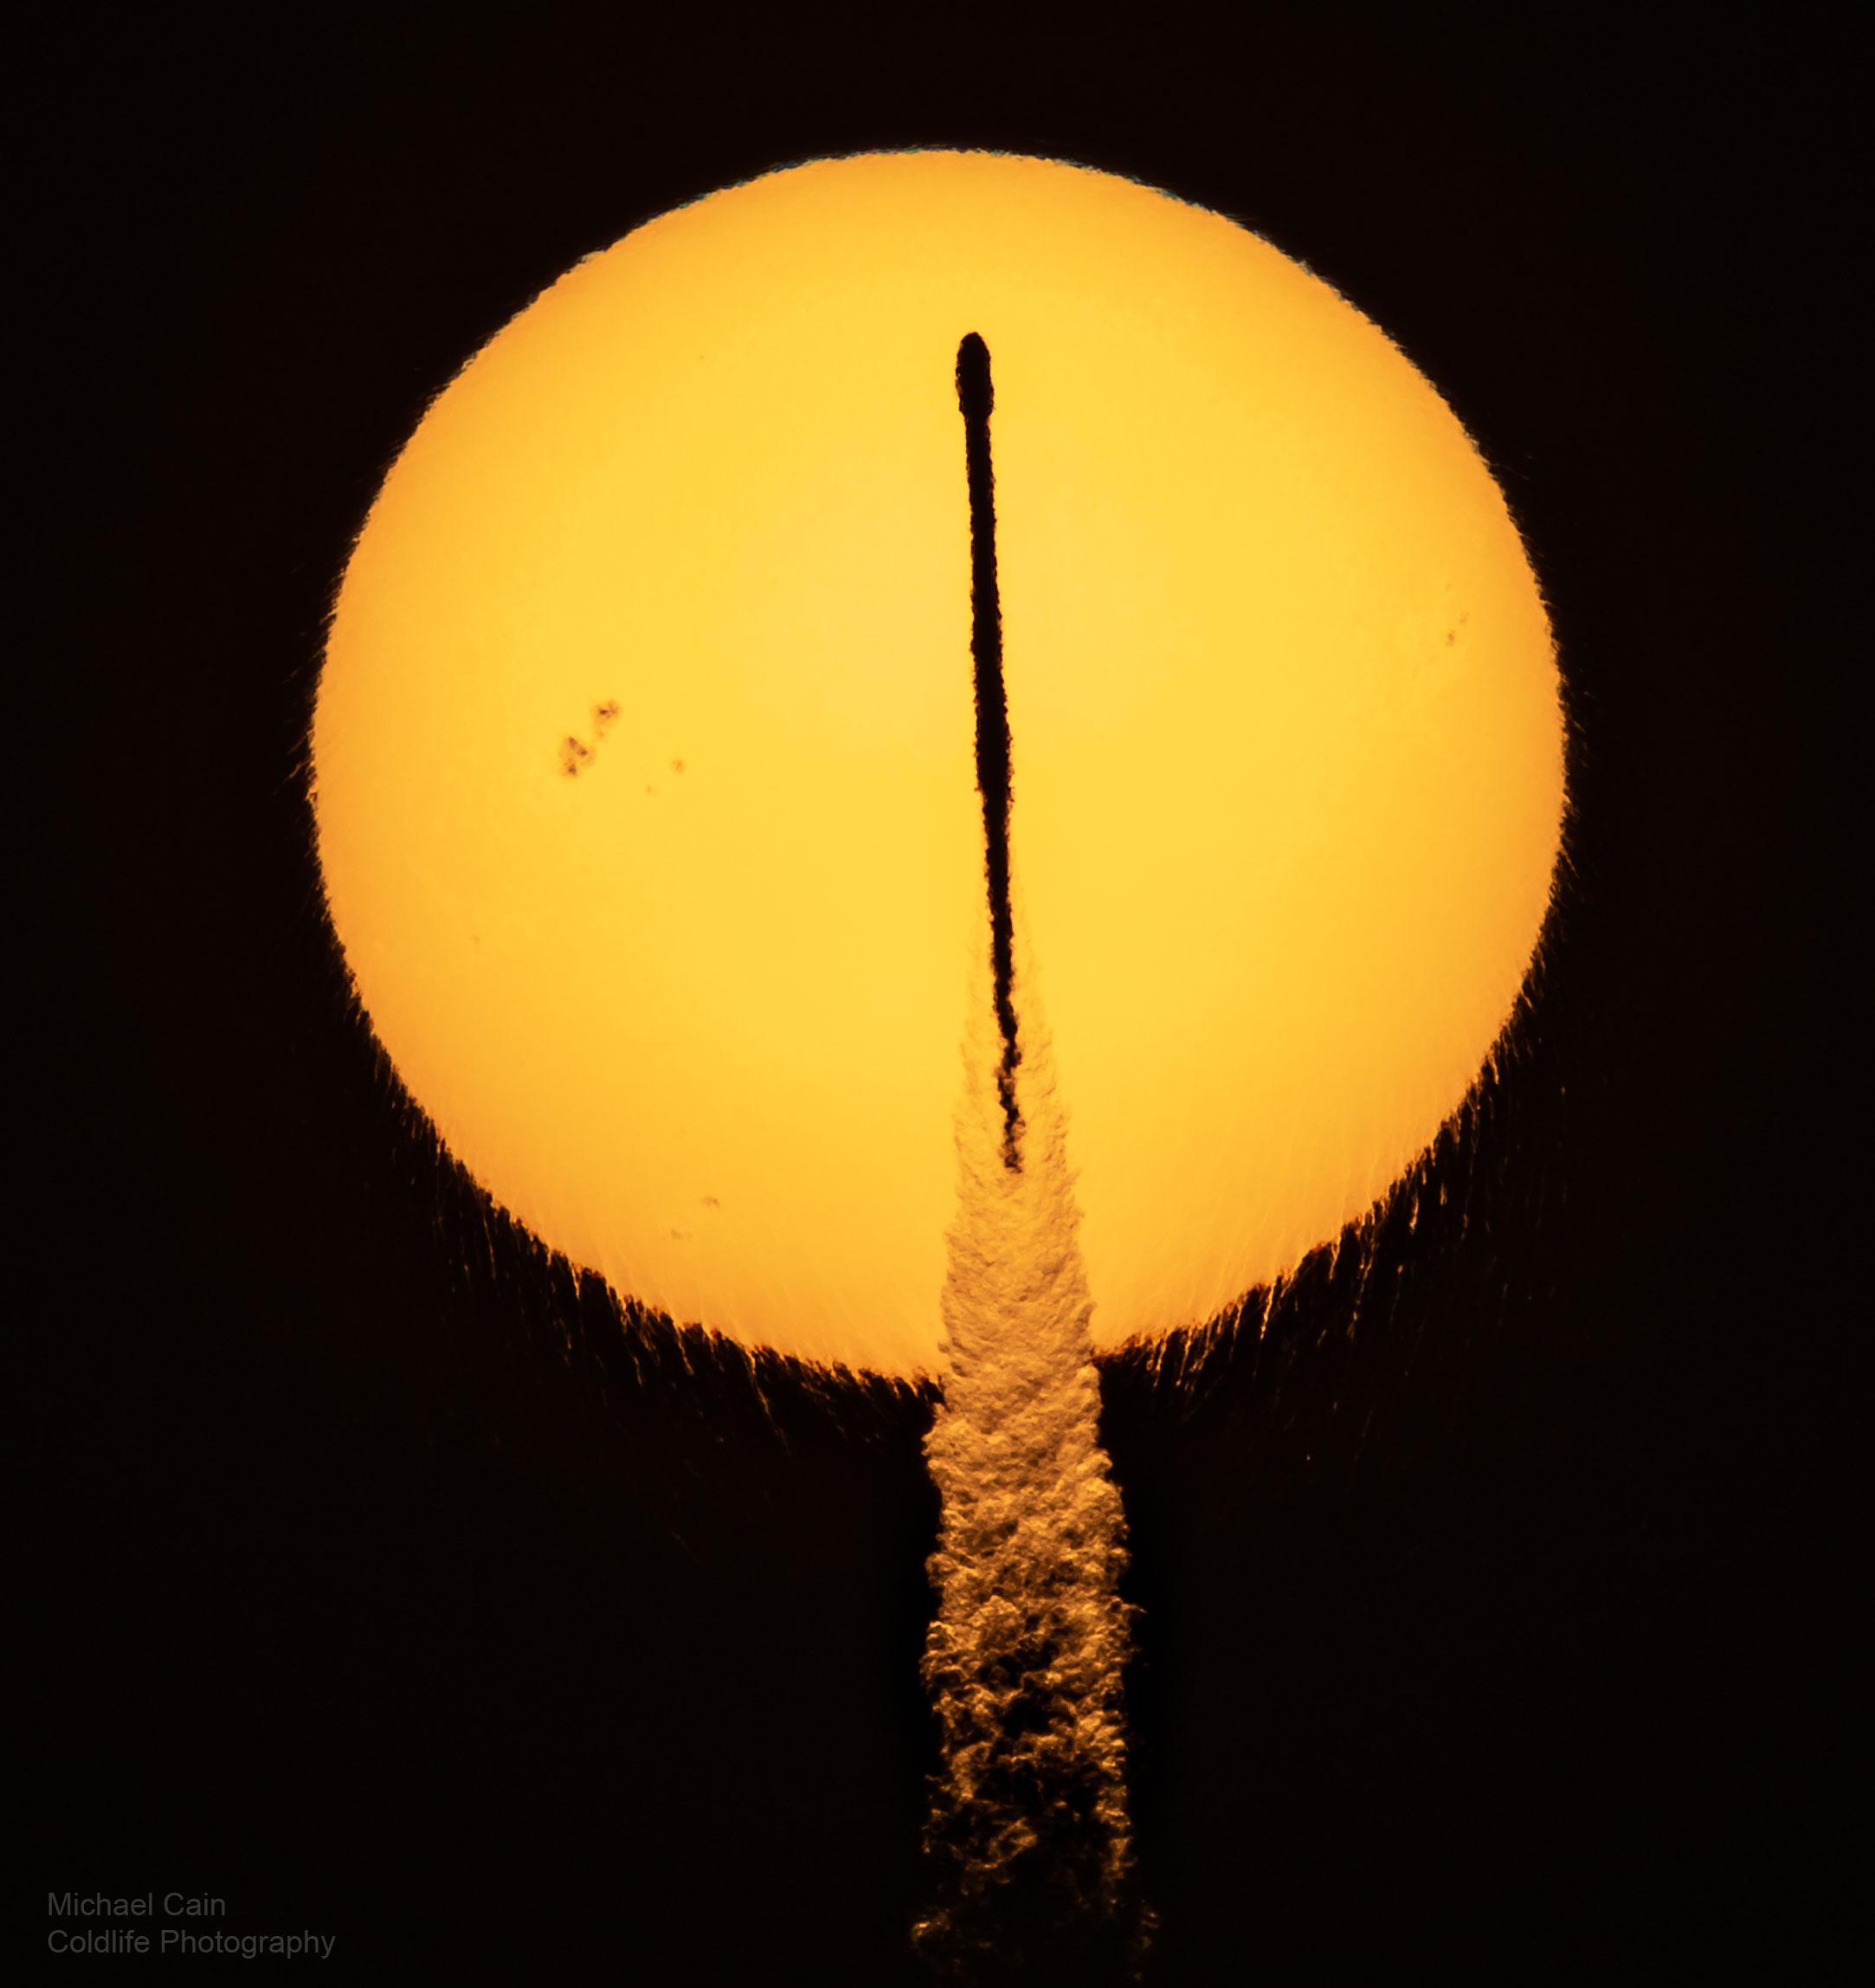 قرص الشمس وأمامه ظَليل صاروخ يظهر كعود ثقاب متعرج قليلاً وتحته عمود دخانه. تظهر الشمس متموجة في الأسفل كذلك مع عبور بقعة شمسية في يسارها